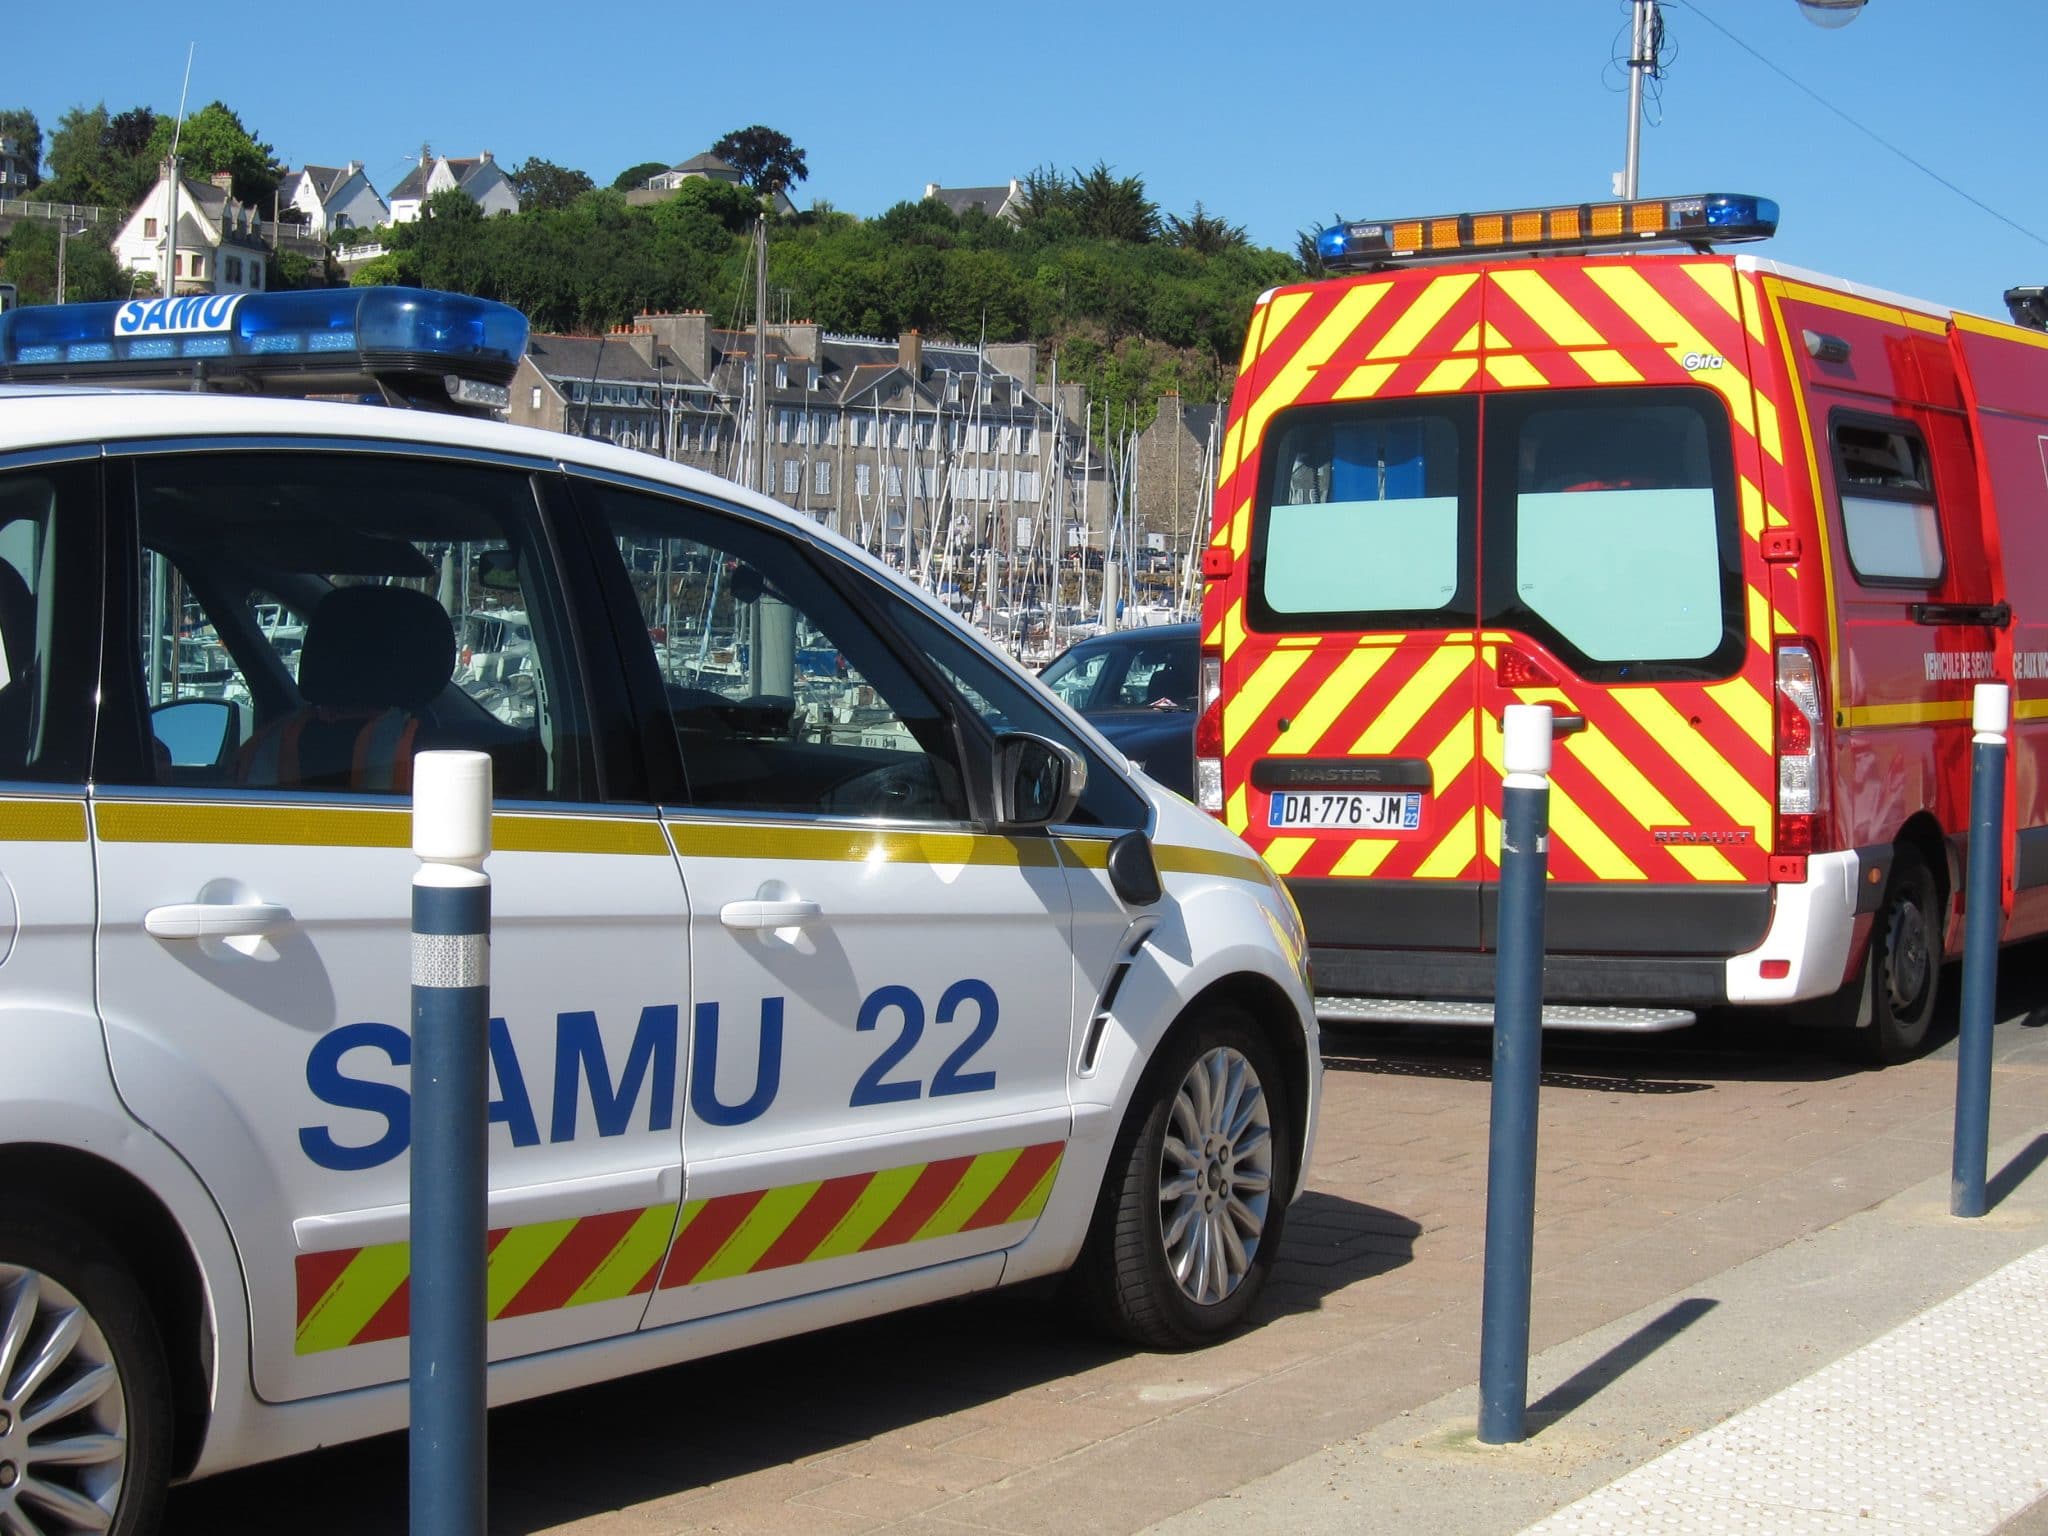 Des véhicules d'urgence, dont une voiture du Samu 22 et un camion de pompiers, garés près d'un front de mer, prêts à répondre à tout numéro d'urgence.